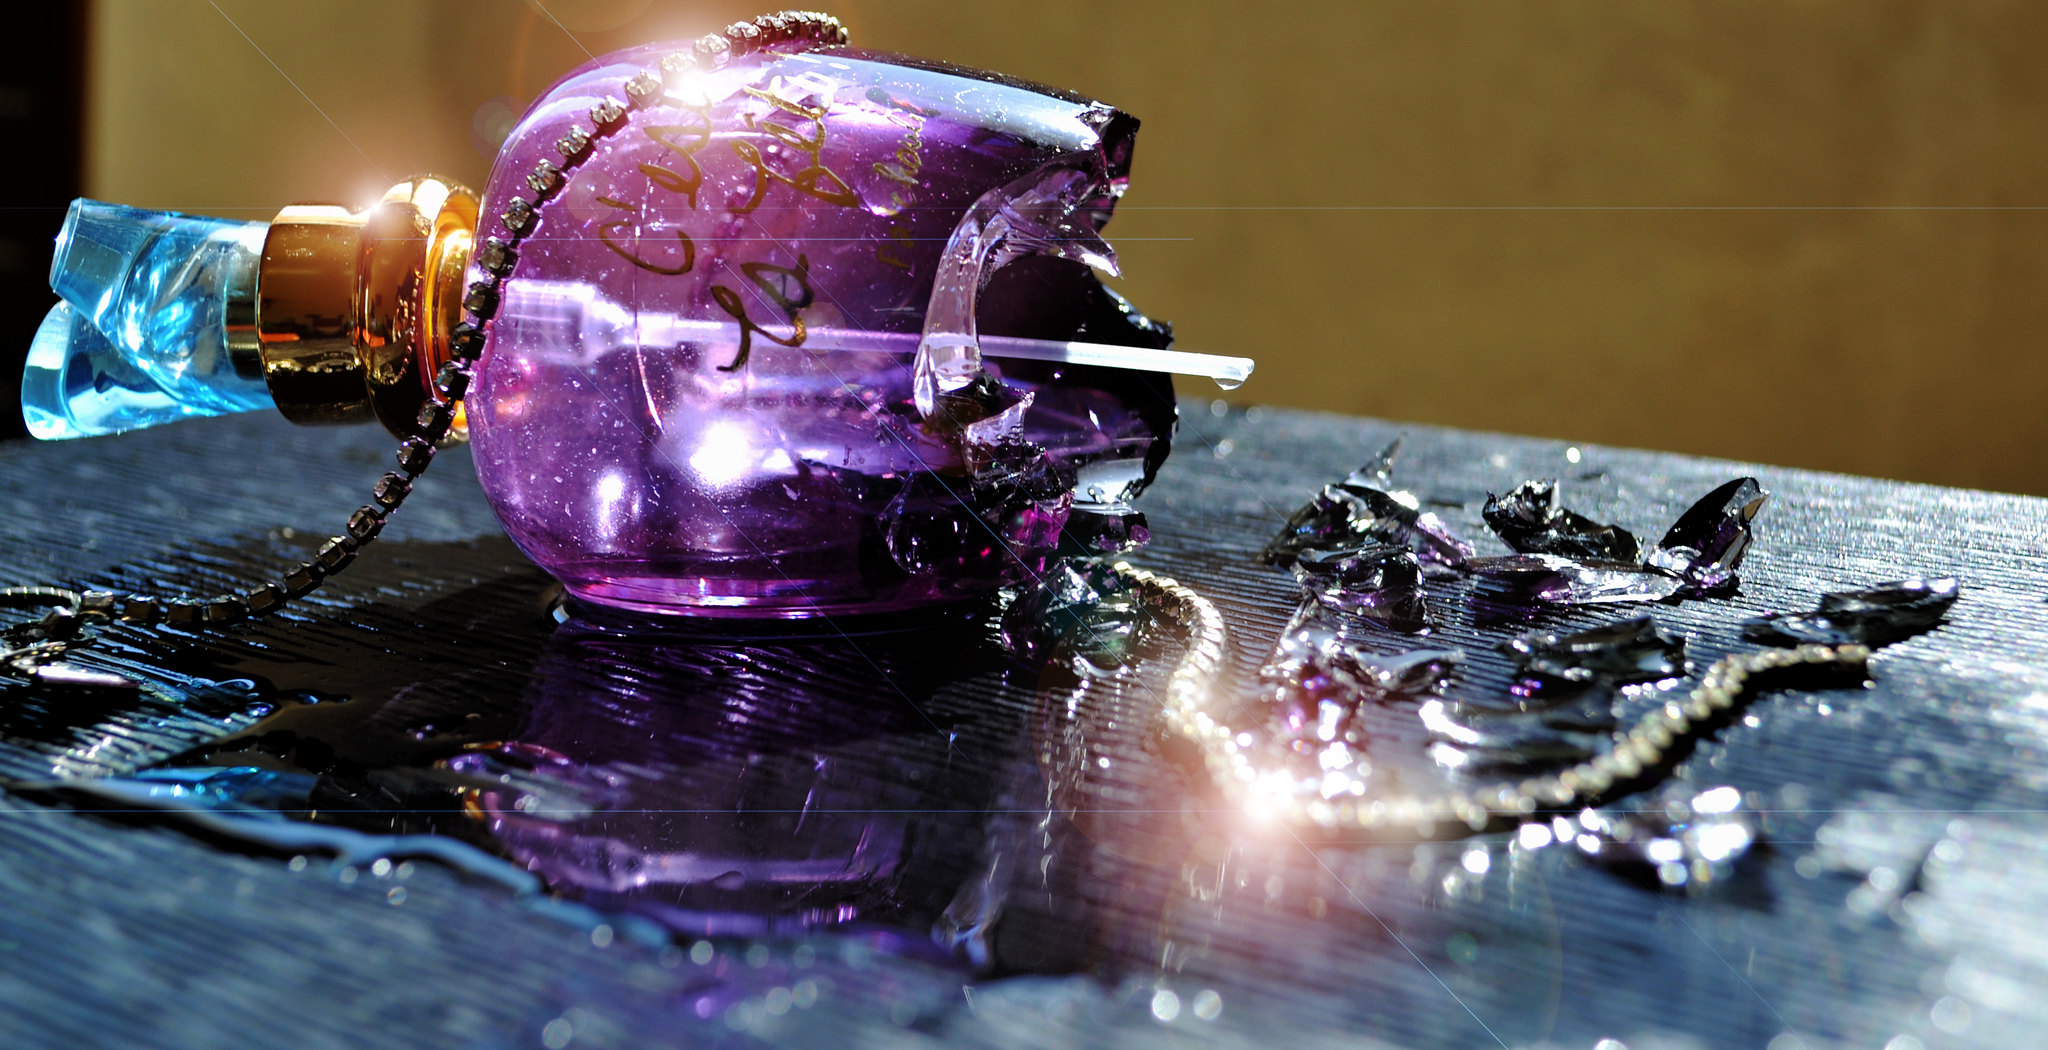 Broken perfume bottle | Source: Flickr